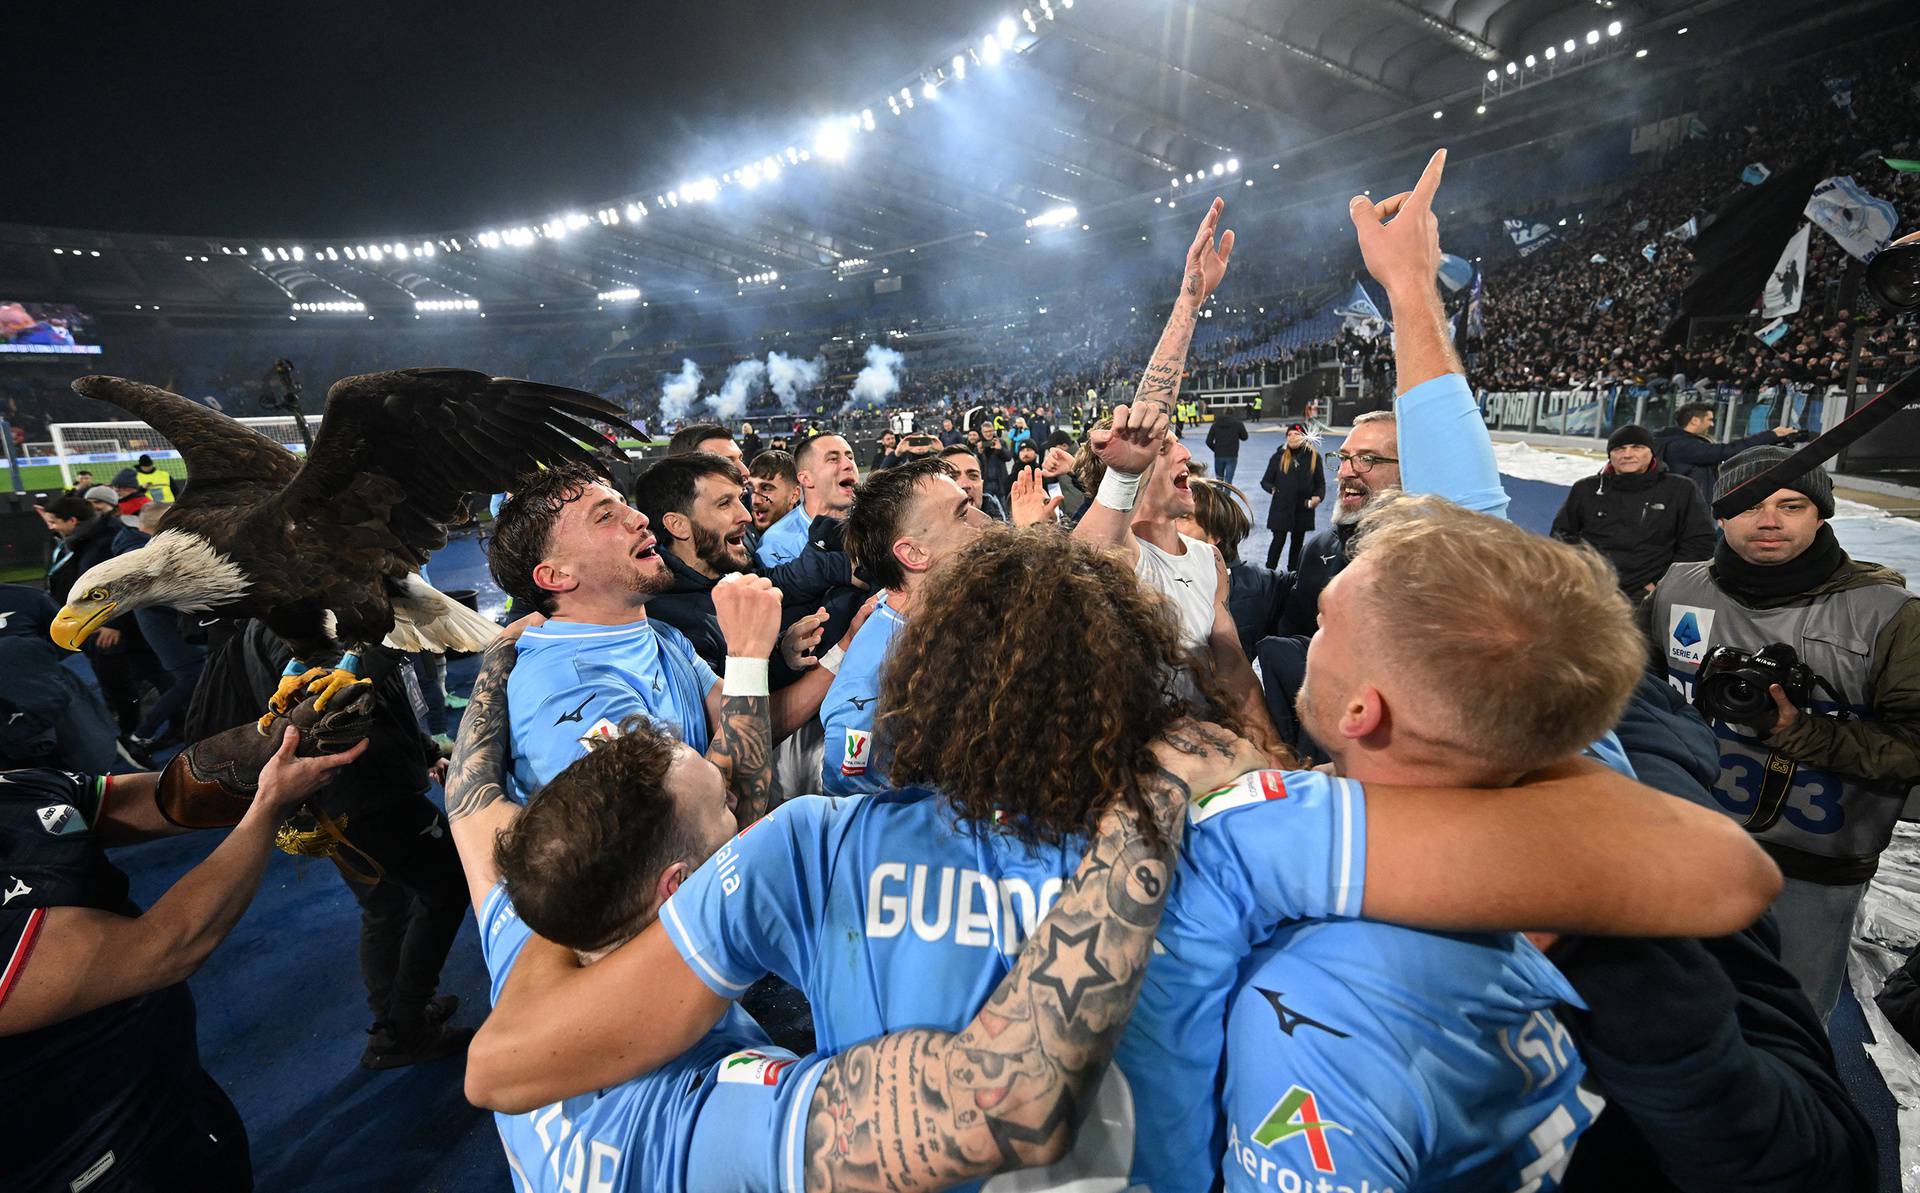 Coppa Italia - Quarter Final - Lazio v AS Roma